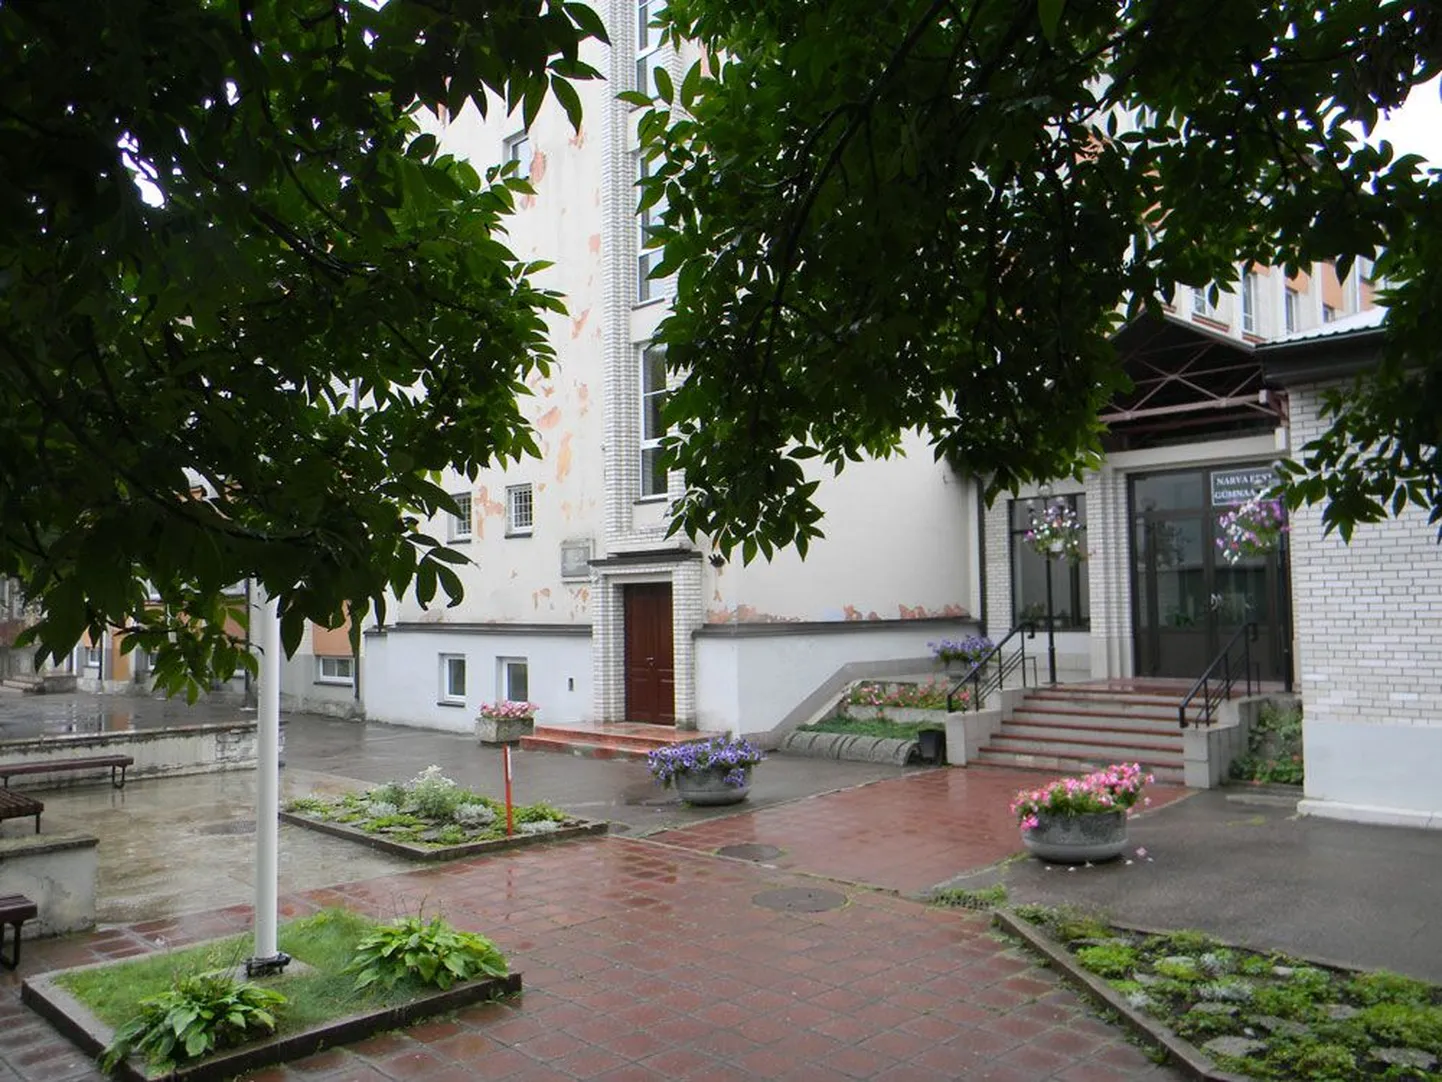 Narva eesti gümnaasiumi hoones peaksid uue plaani järgi 2014. aasta 1. septembril õppima asuma vaid põhikooliõpilased, mõlema kooli gümnasistid aga selle kõrval paiknevas vanalinna gümnaasiumi hoones.